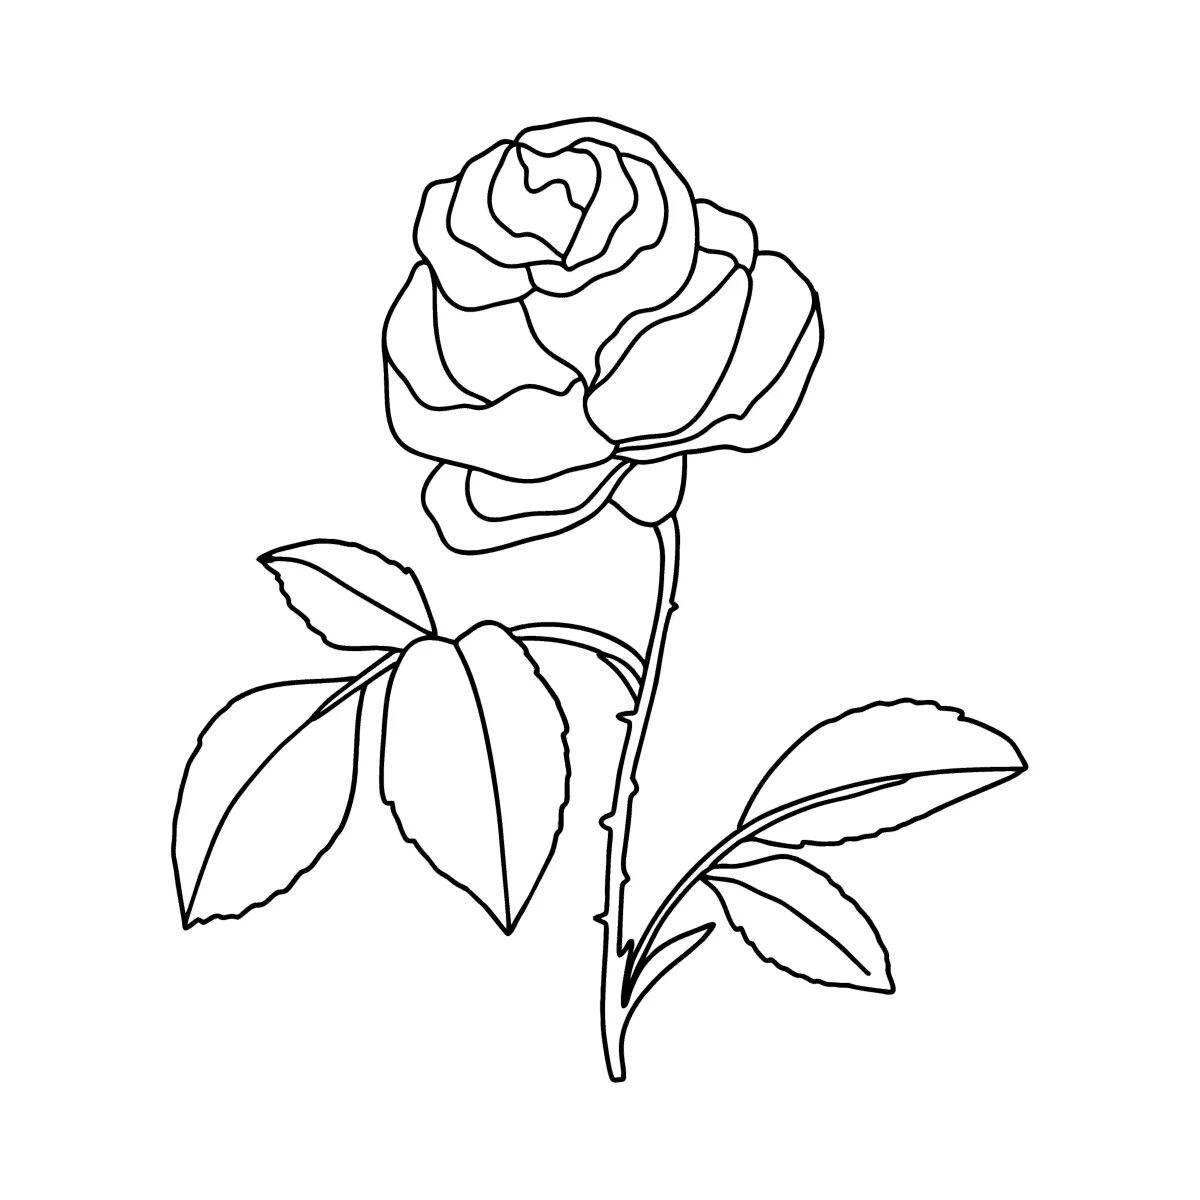 Причудливая раскраска розы для детей 5-6 лет